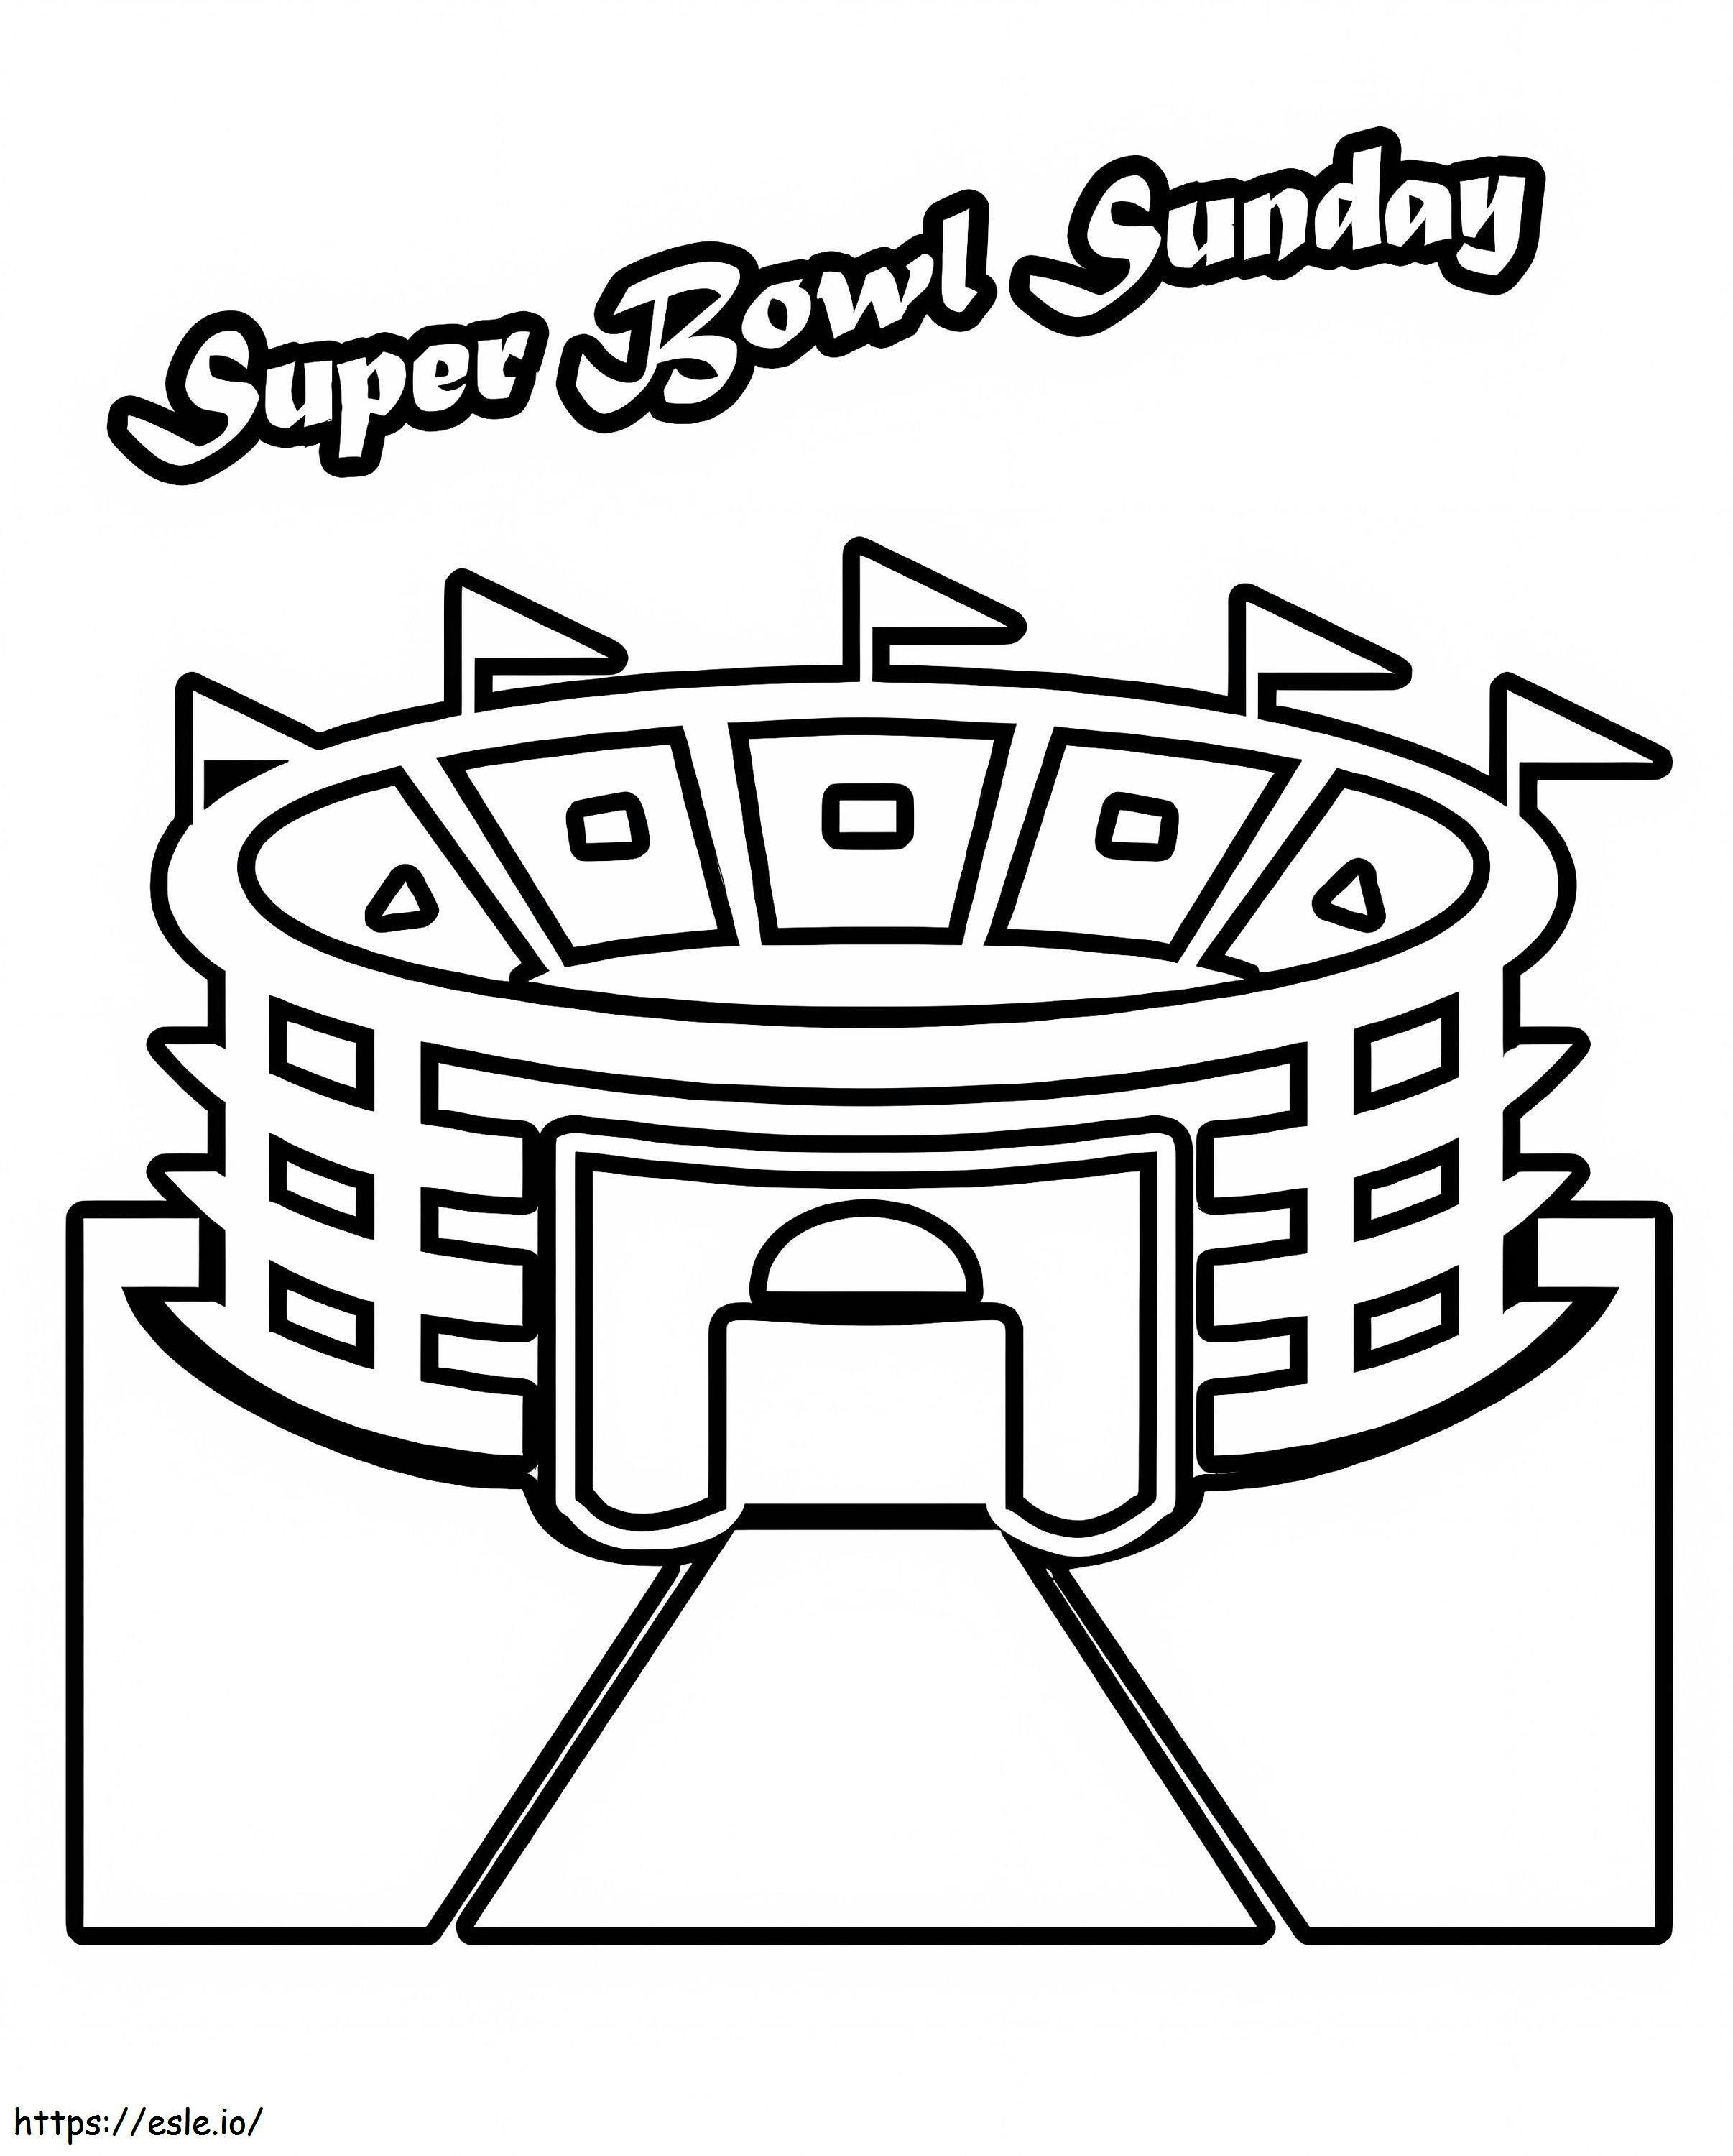 Coloriage Coloriage du Super Bowl du dimanche à imprimer dessin